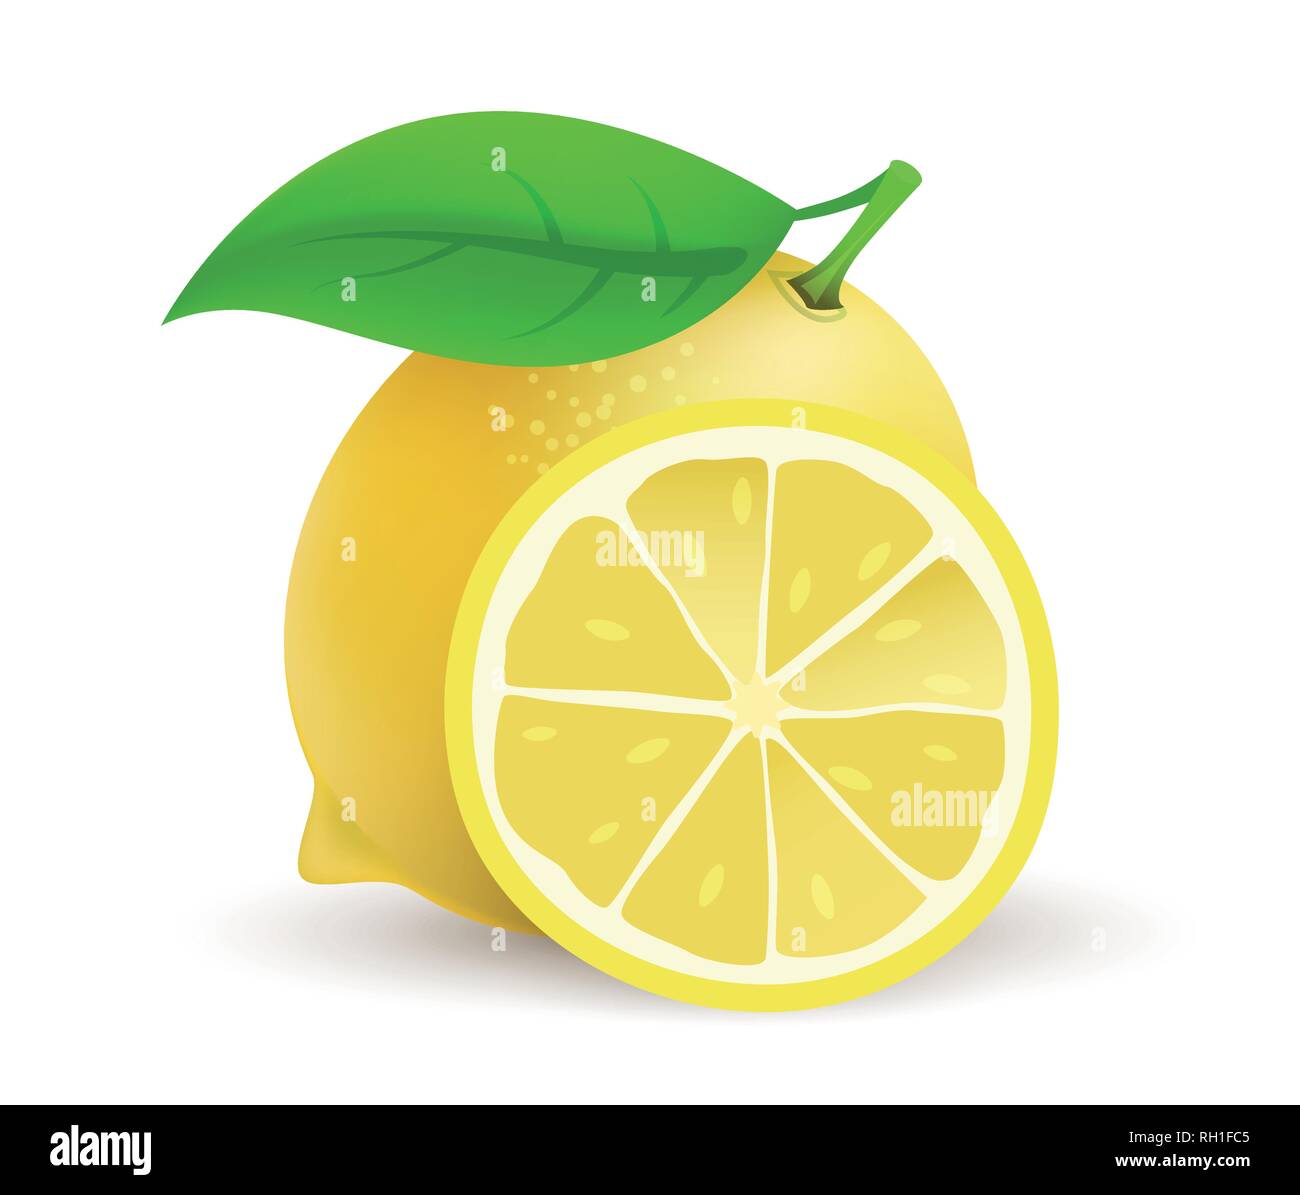 Với hình ảnh trái chanh nguyên hình thực tế - biểu tượng vector sinh động, bạn sẽ có những cái nhìn mới về trái chanh và cảm thấy mát lạnh từ nó. Được thiết kế độc đáo, hình ảnh này đảm bảo sẽ khiến bạn muốn sử dụng nó cho các dự án của mình.